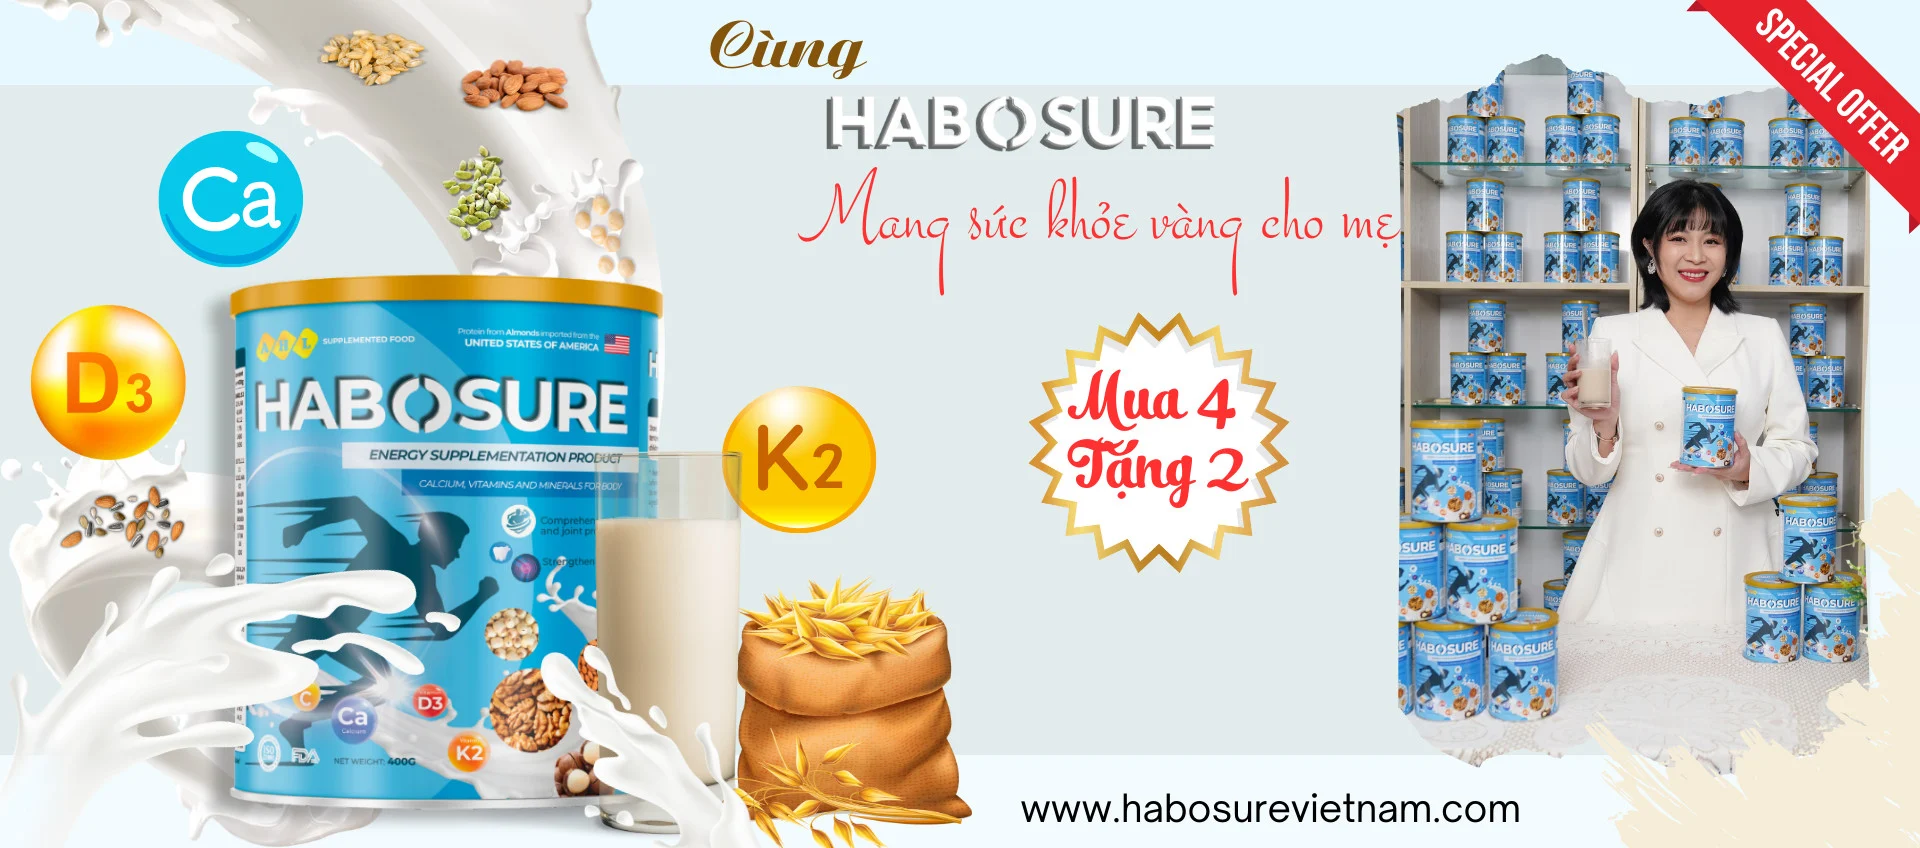 Habosure - Sữa hạt xương khớp thuần chay